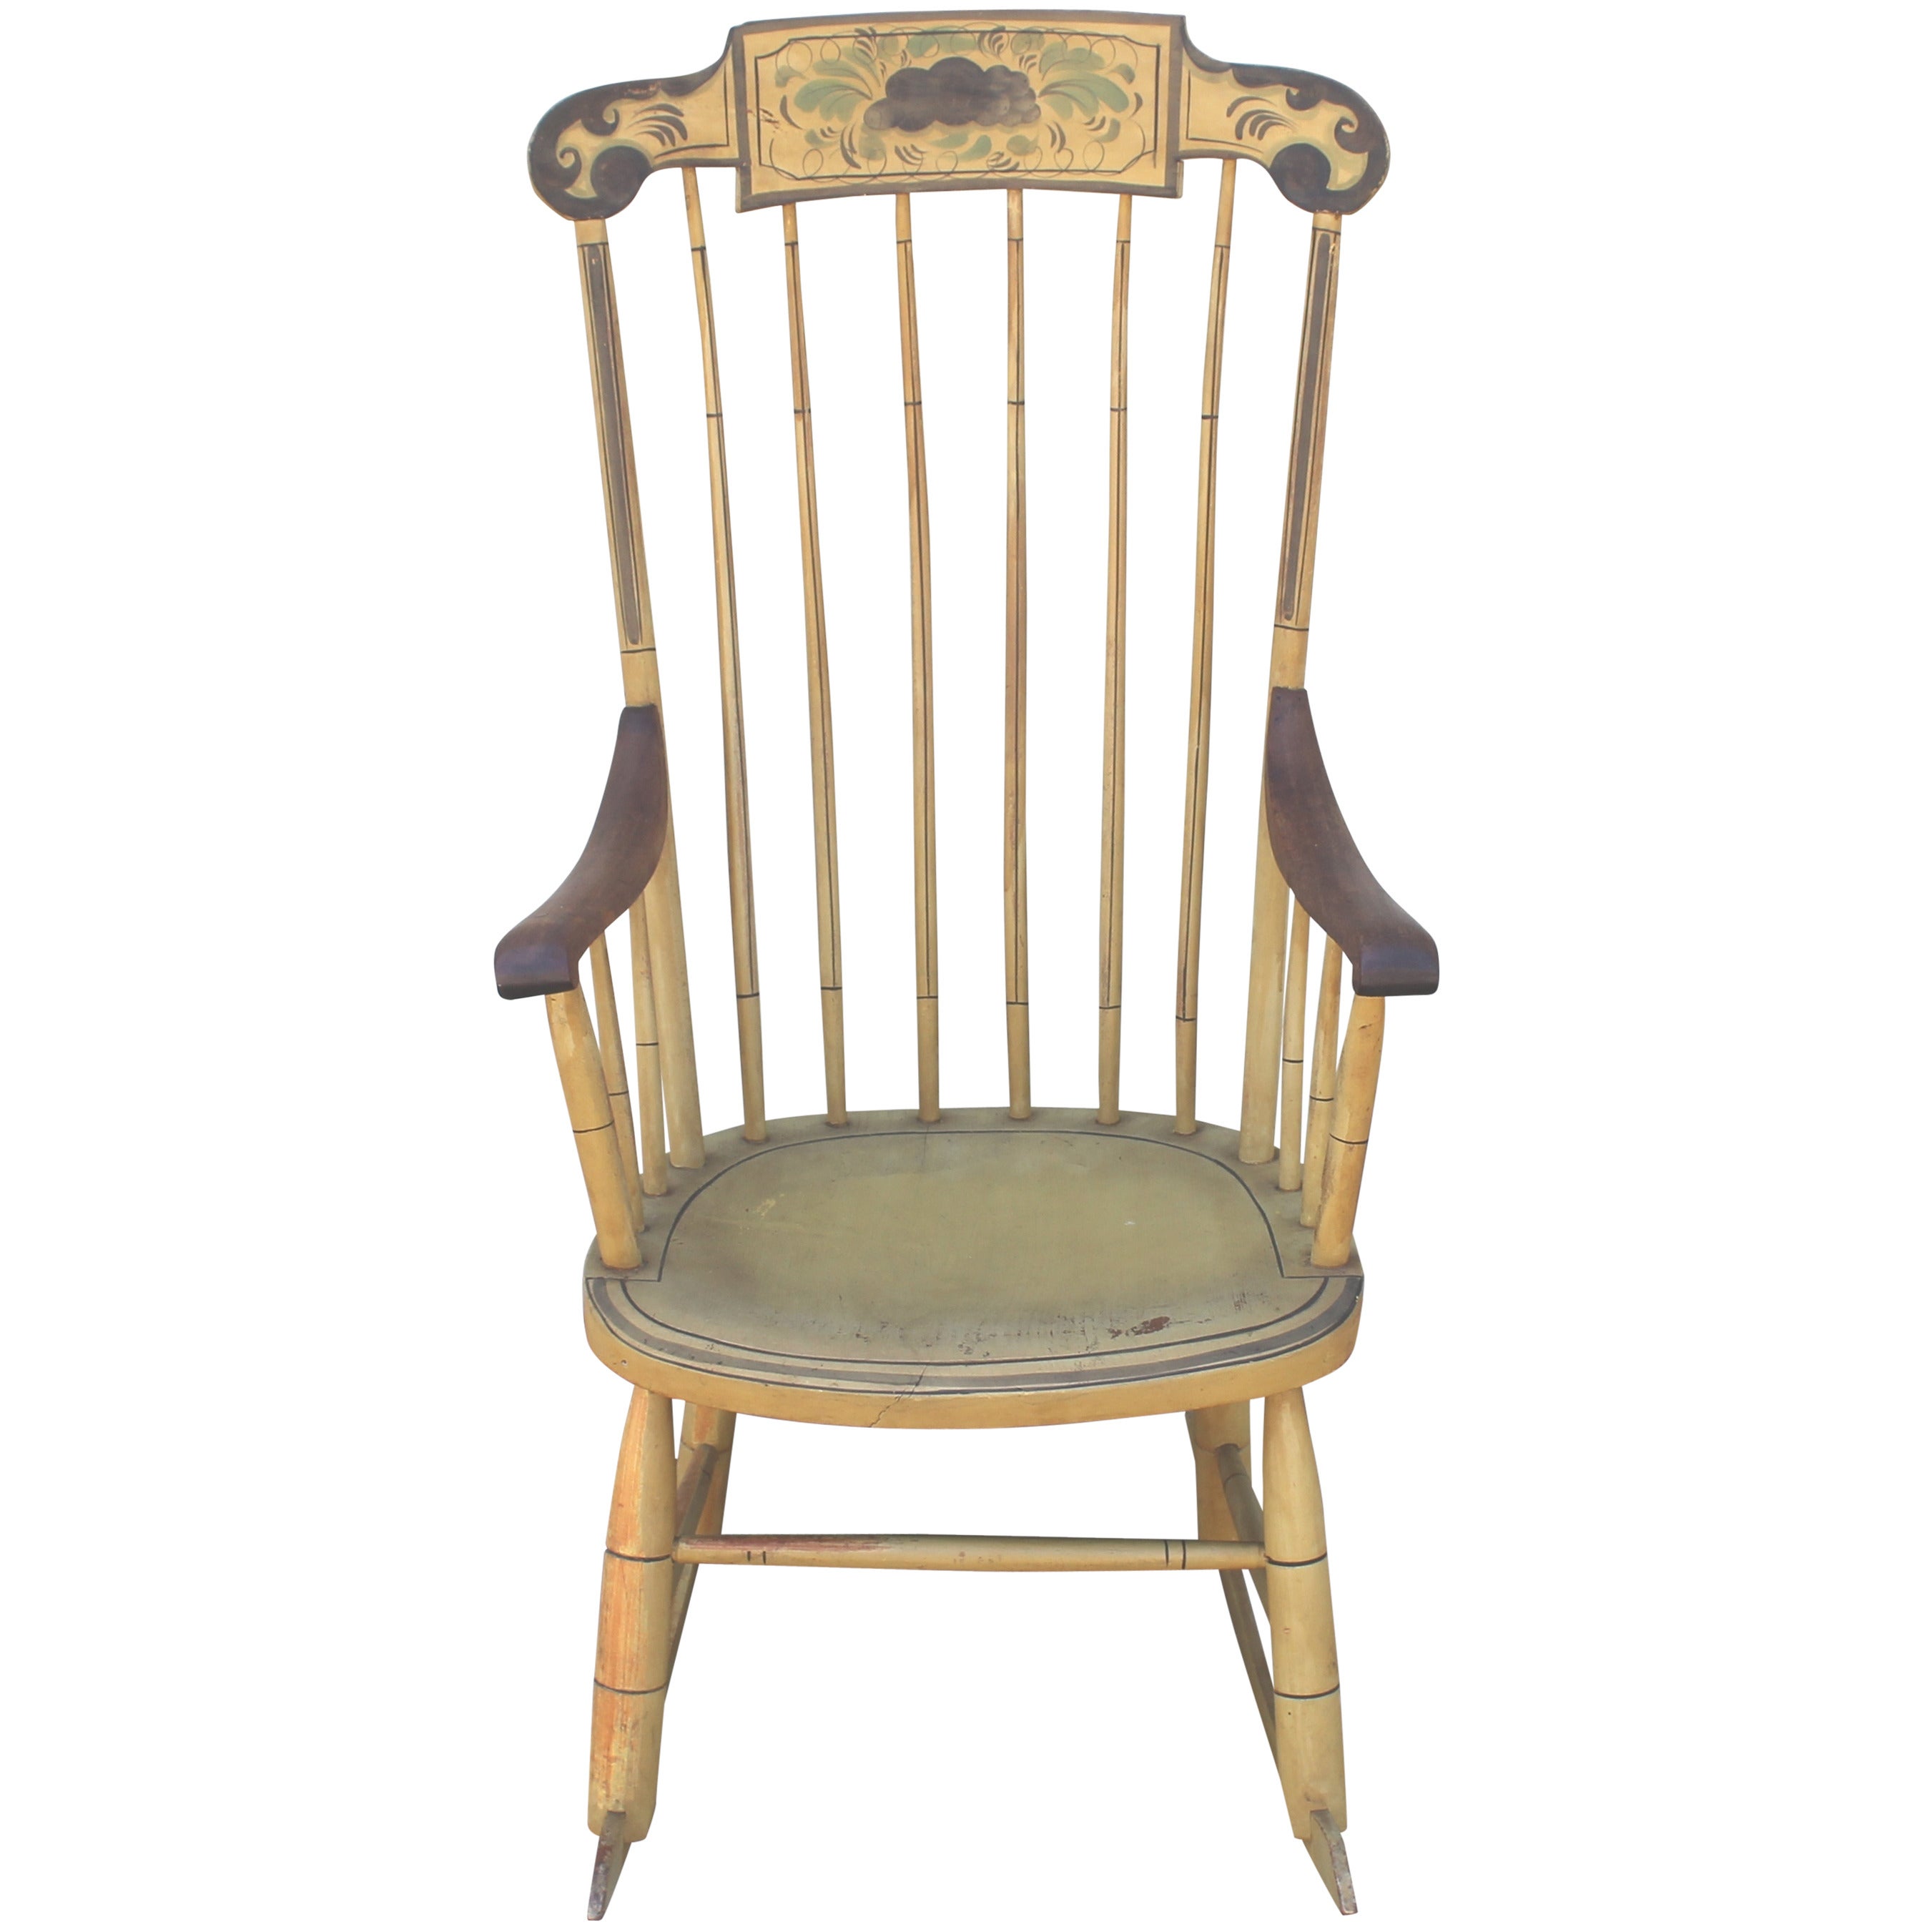 Chaise à bascule originale peinte du XIXe siècle de style fantaisie de la Nouvelle-Angleterre